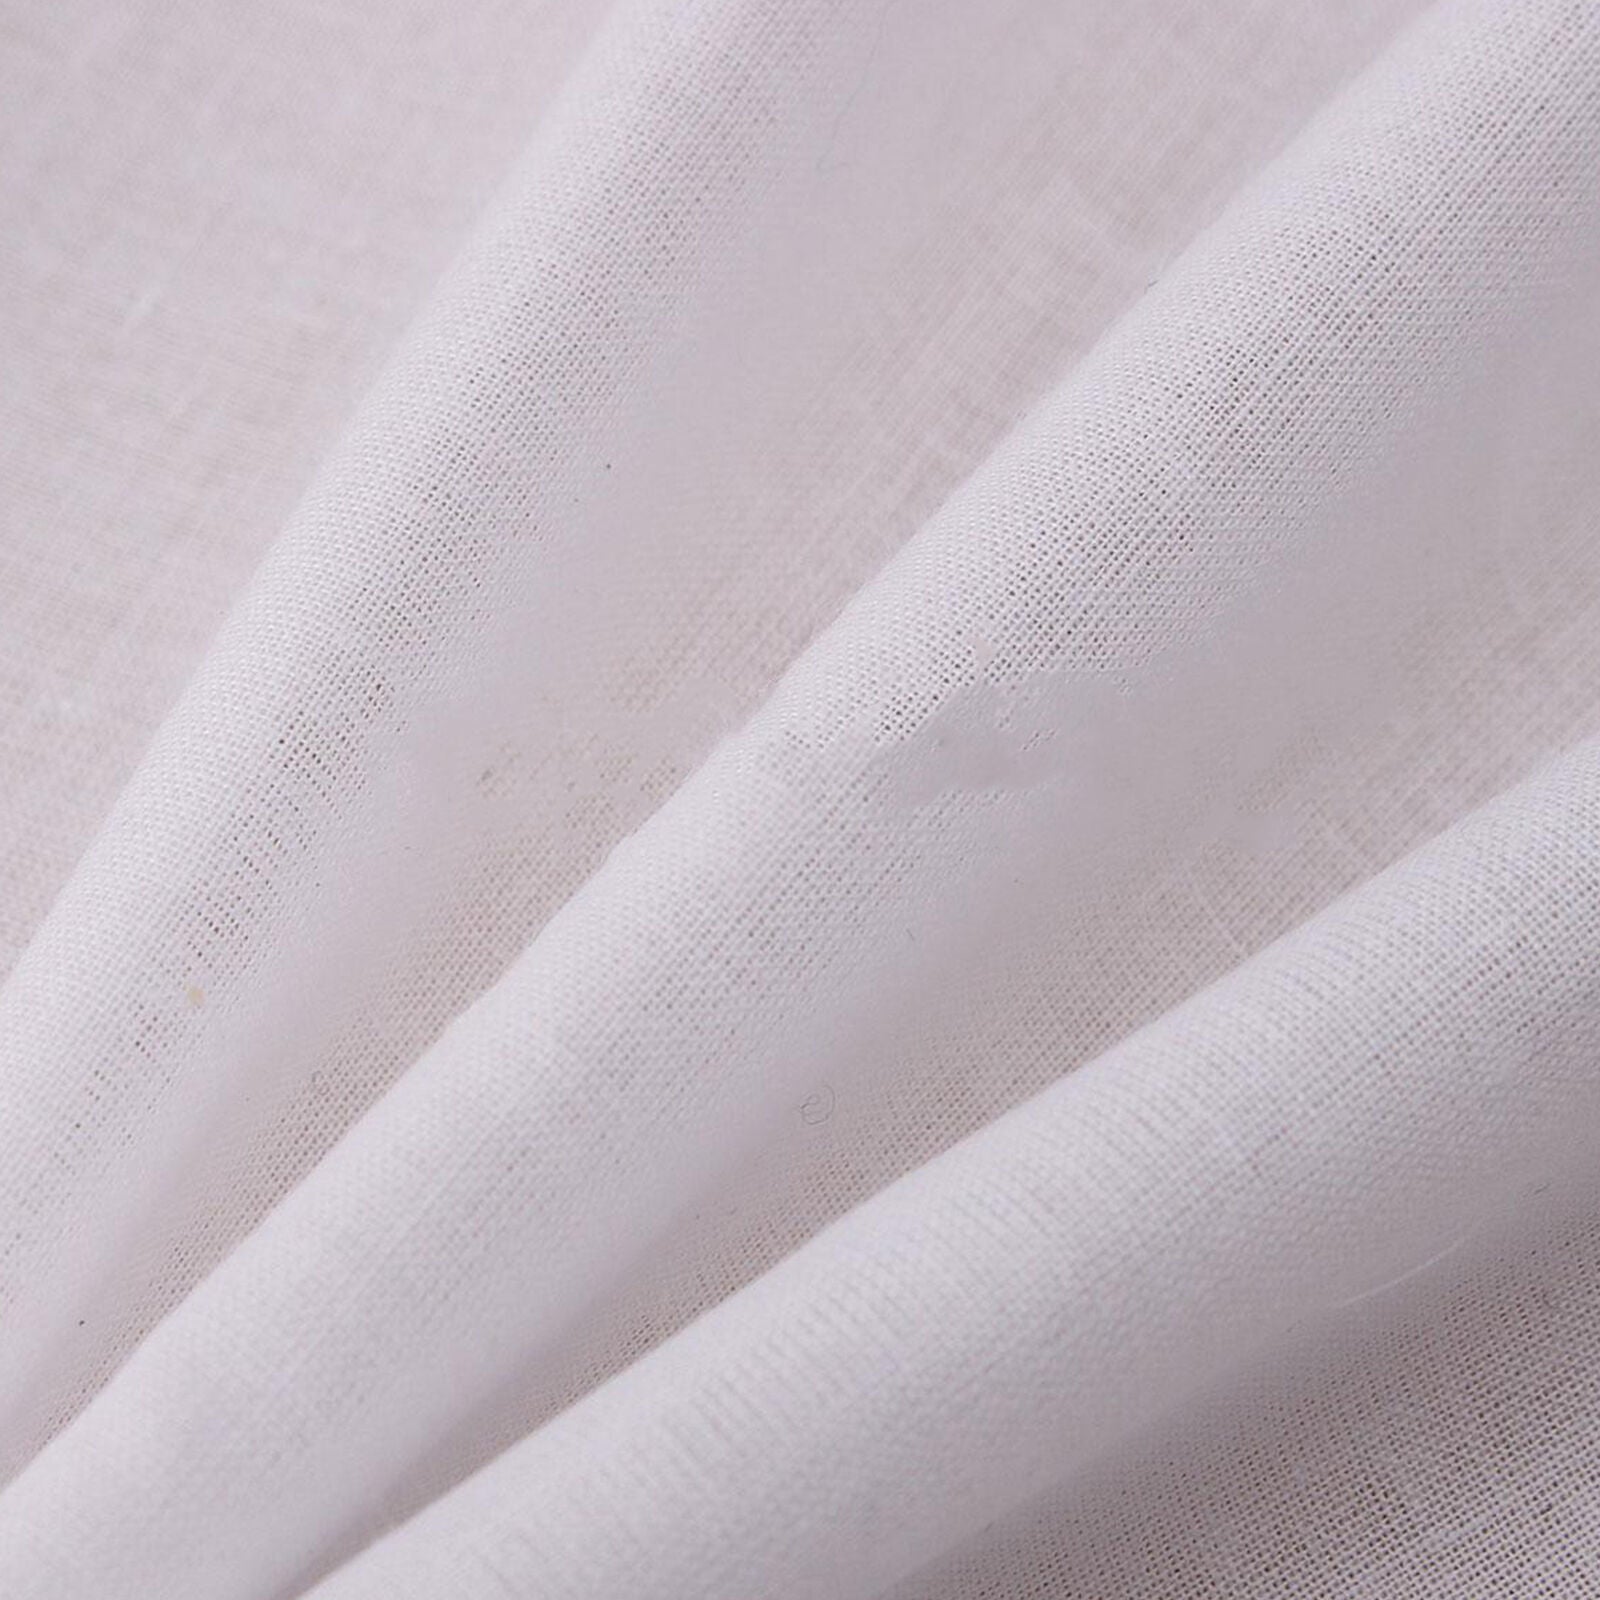 12pcs Men Plain White Cotton Handkerchiefs Hankies Sweat Face Towel 28*28cm